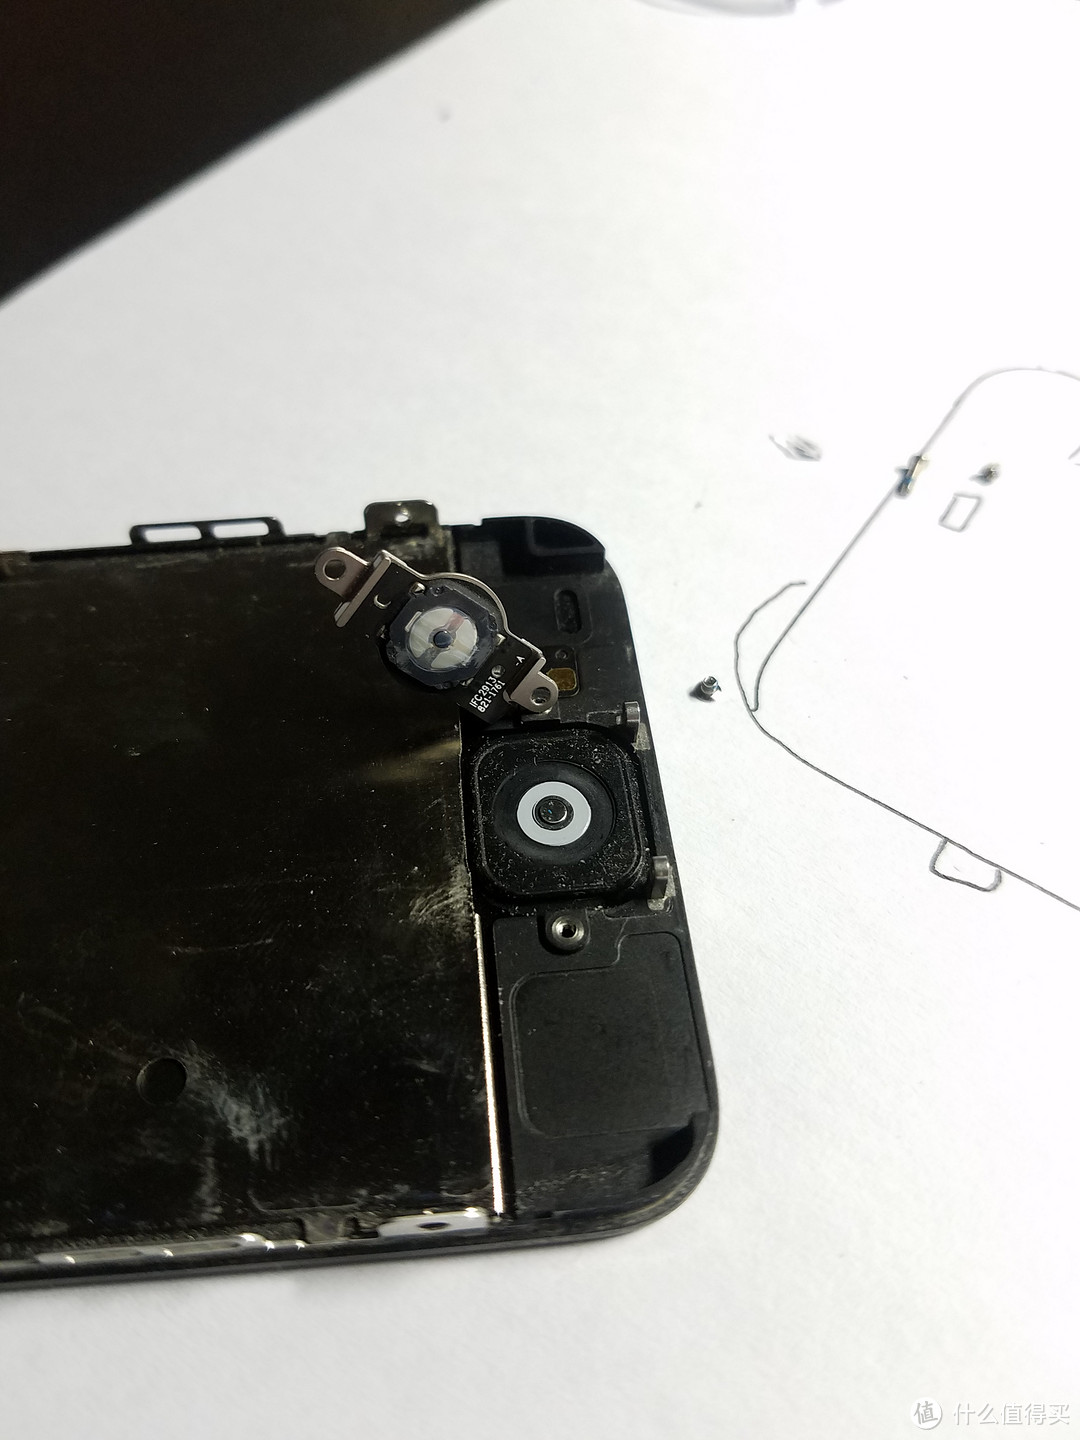 来，喝了这碗天香续命露：iPhone 5系列的拆机换电池、换屏幕教程